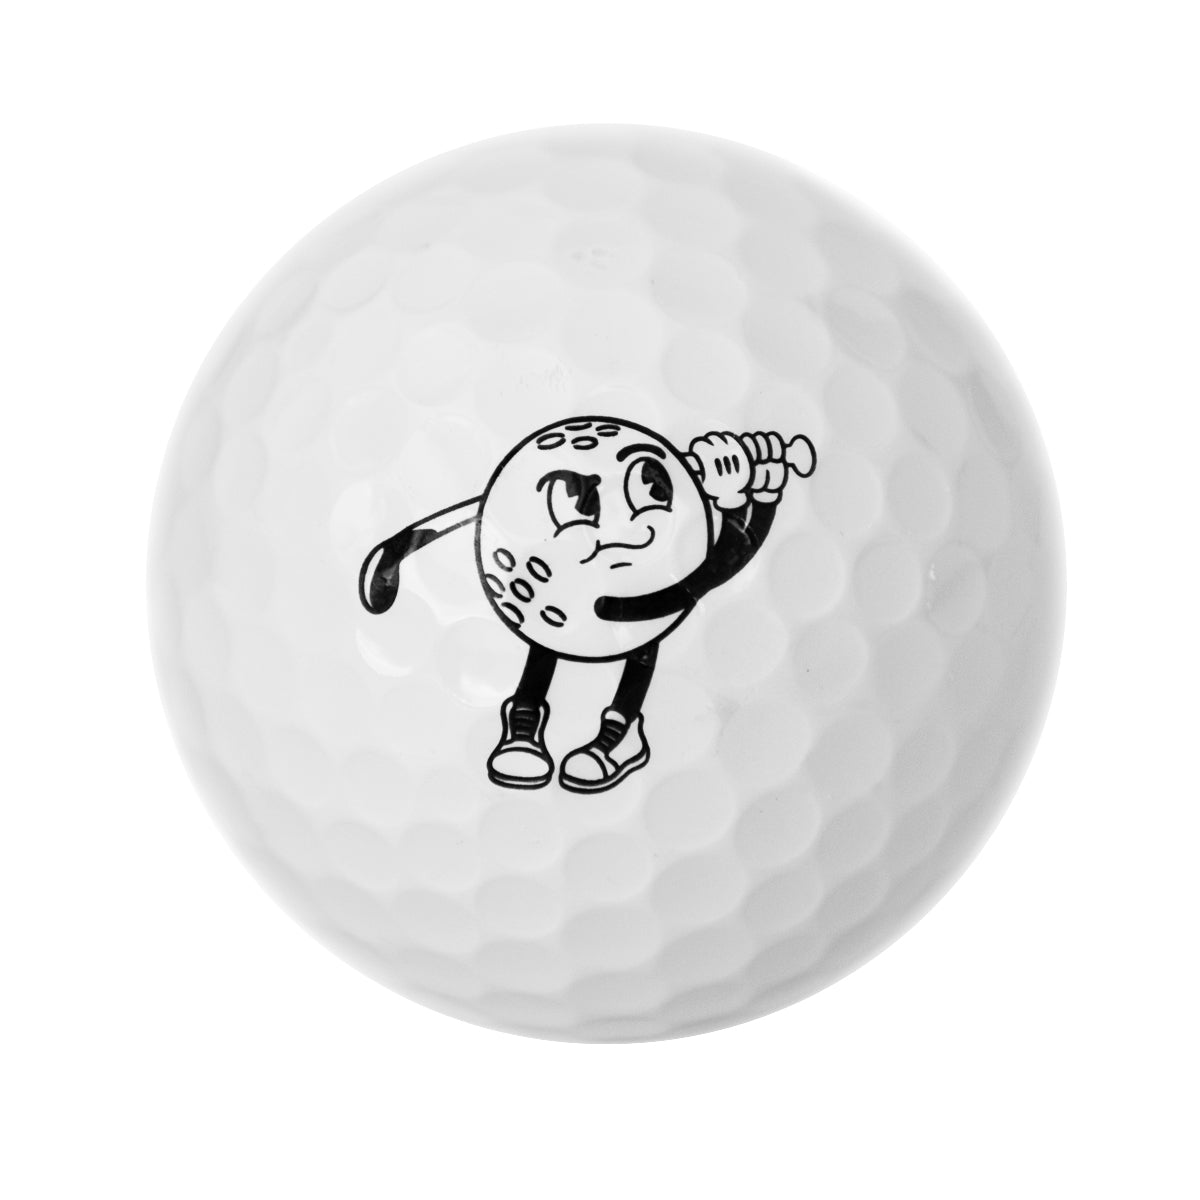 Brunch Golf Ball Case (8 Balls)- No Jokes